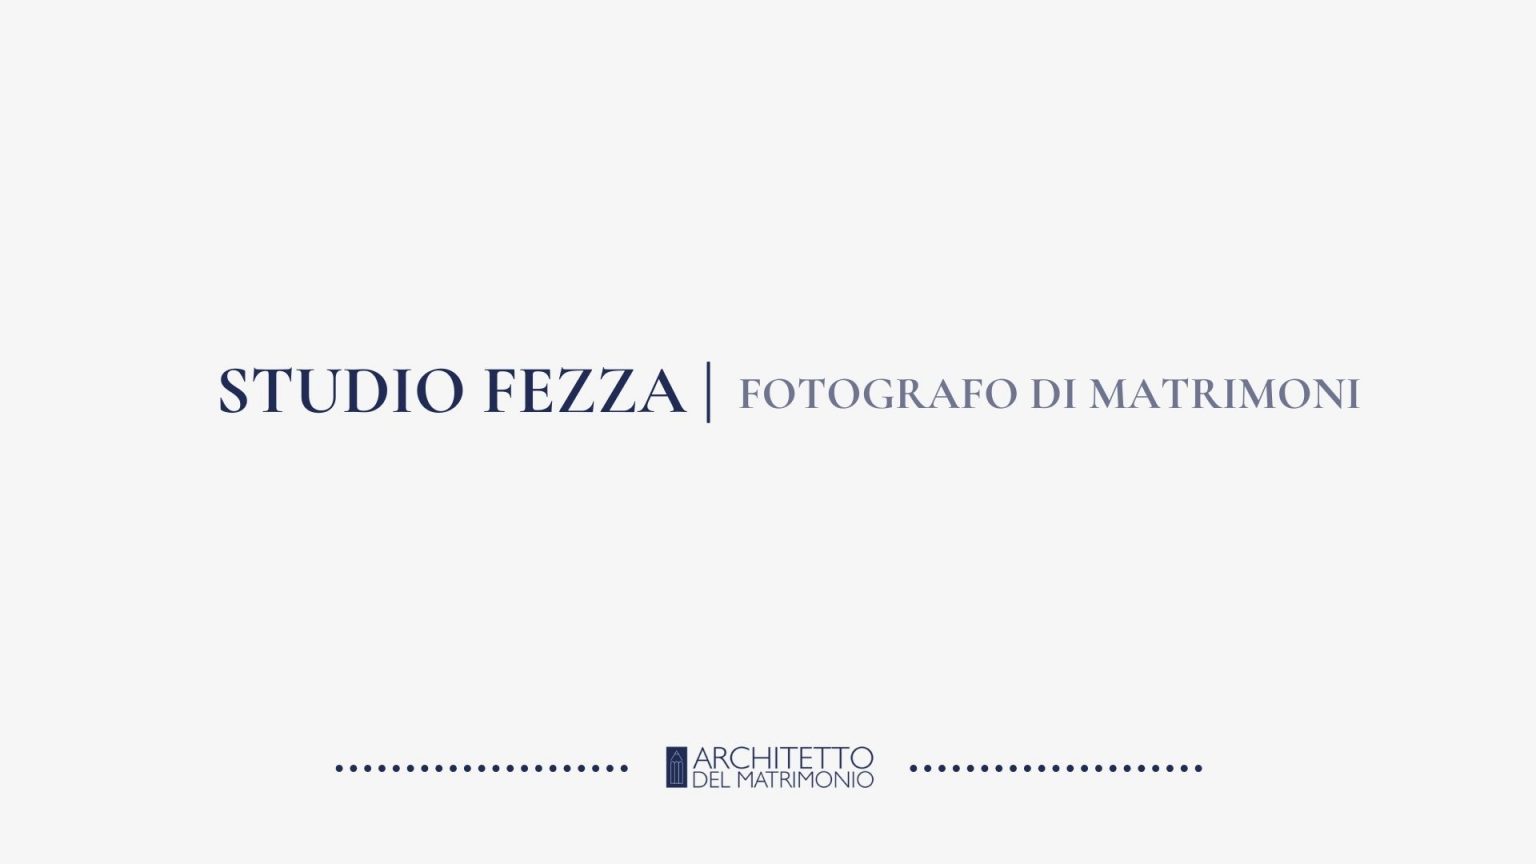 STUDIO FOTOGRAFICO FEZZA-Architetto del Matrimonio